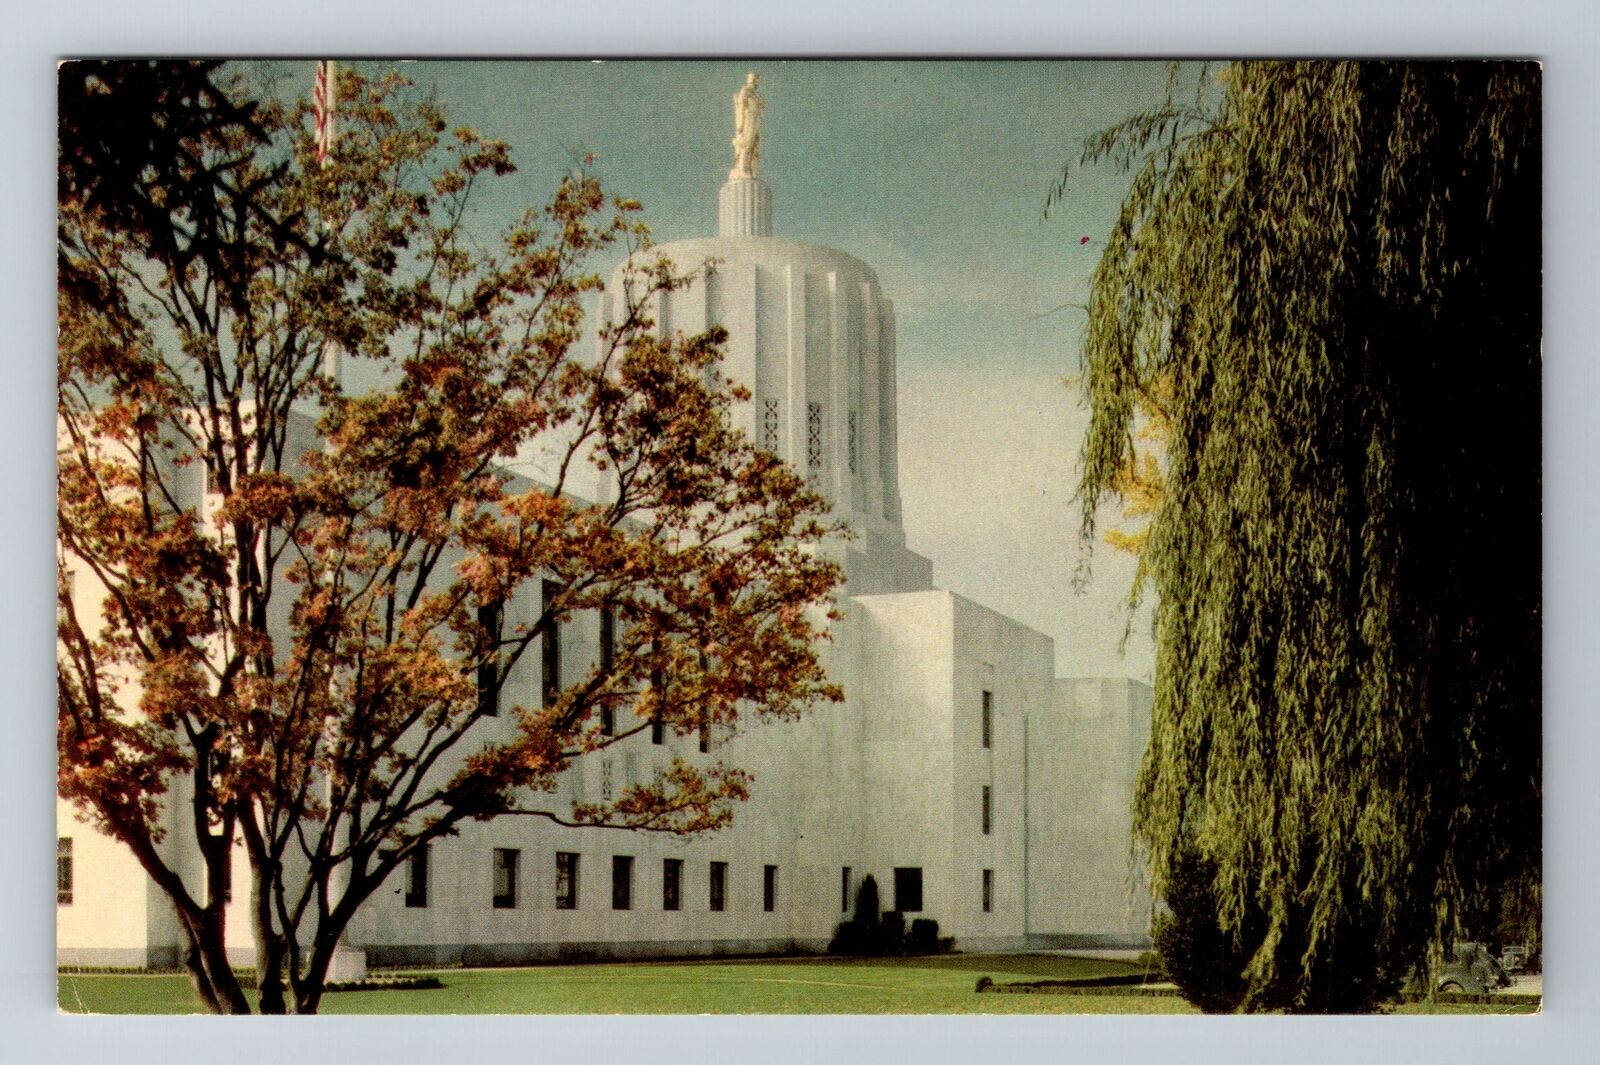 Salem OR-Oregon, State Capitol, Antique, Vintage Souvenir Postcard